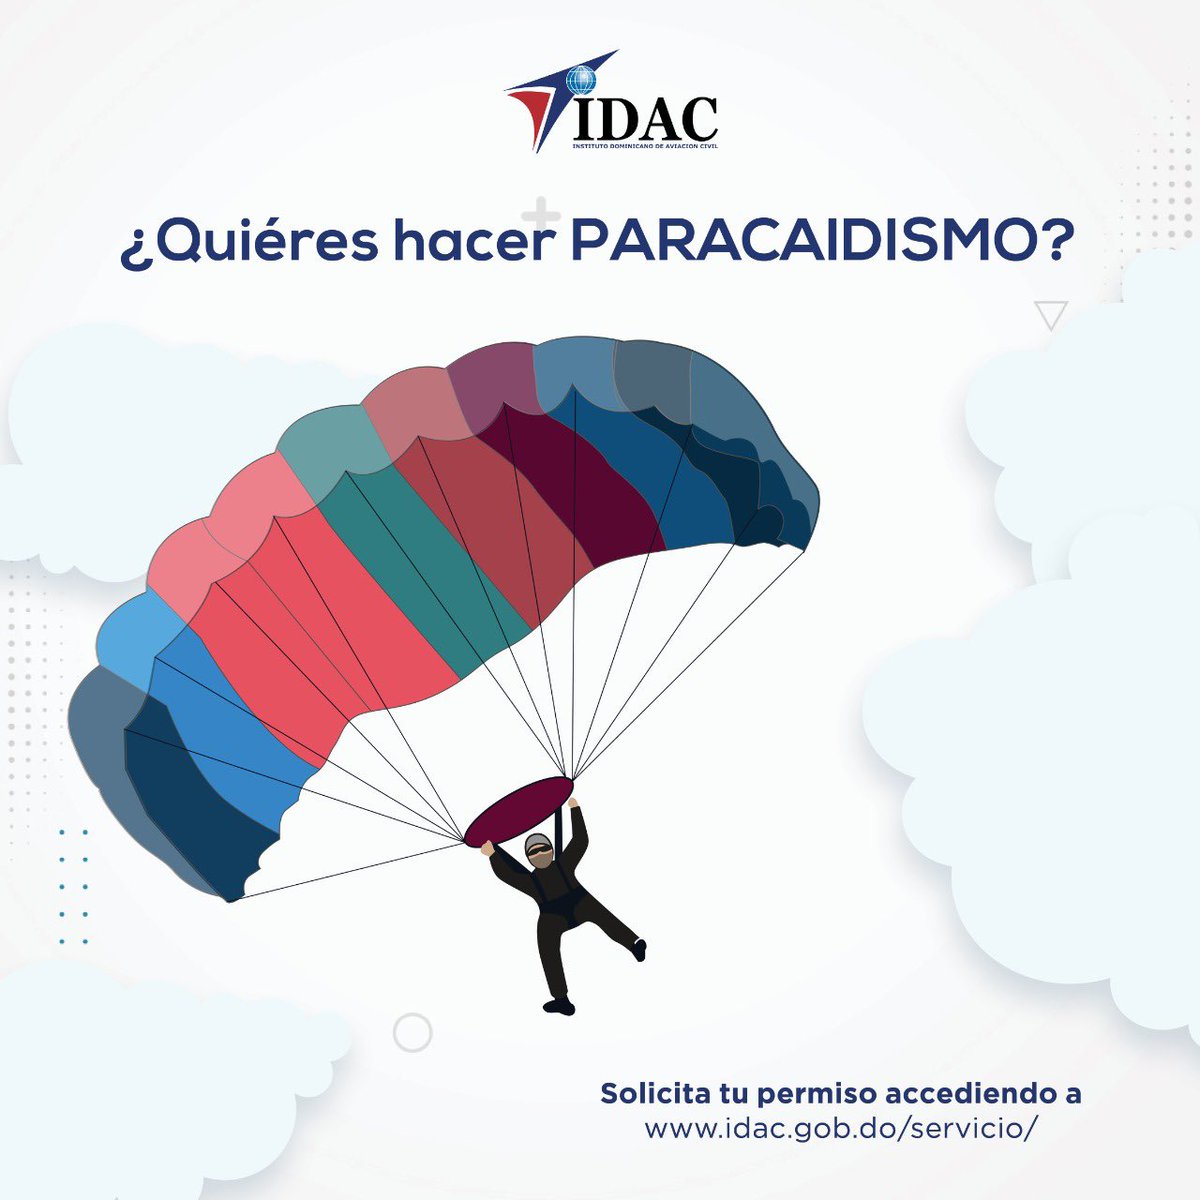 El #Paracaidismo es una técnica de salto desde un avión, globo aerostático, helicóptero o plataforma fija, en el cual se salta o se deja caer desde una gran altura con un artefacto fabricado en tela llamado paracaídas. #IDACRD